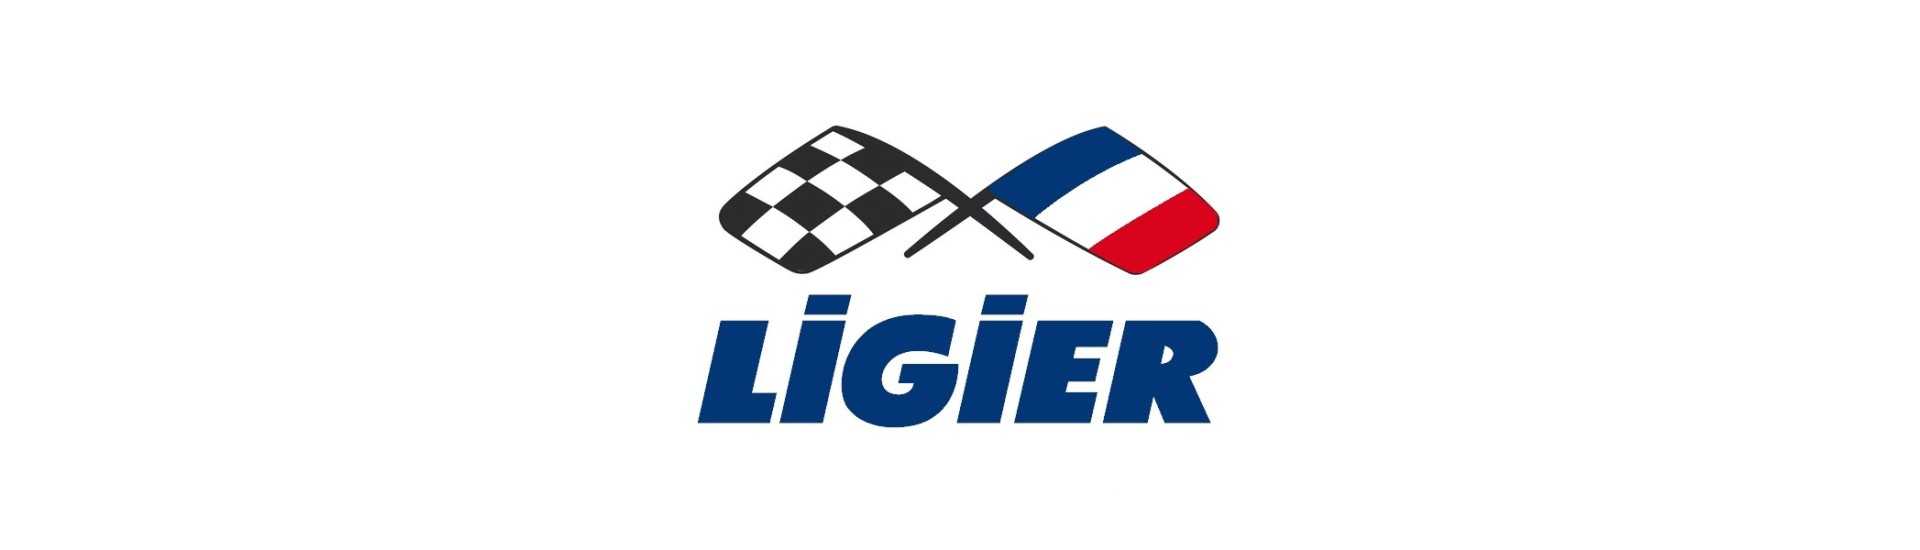 Kabel für den besten Preis für Auto ohne Lizenz Ligier